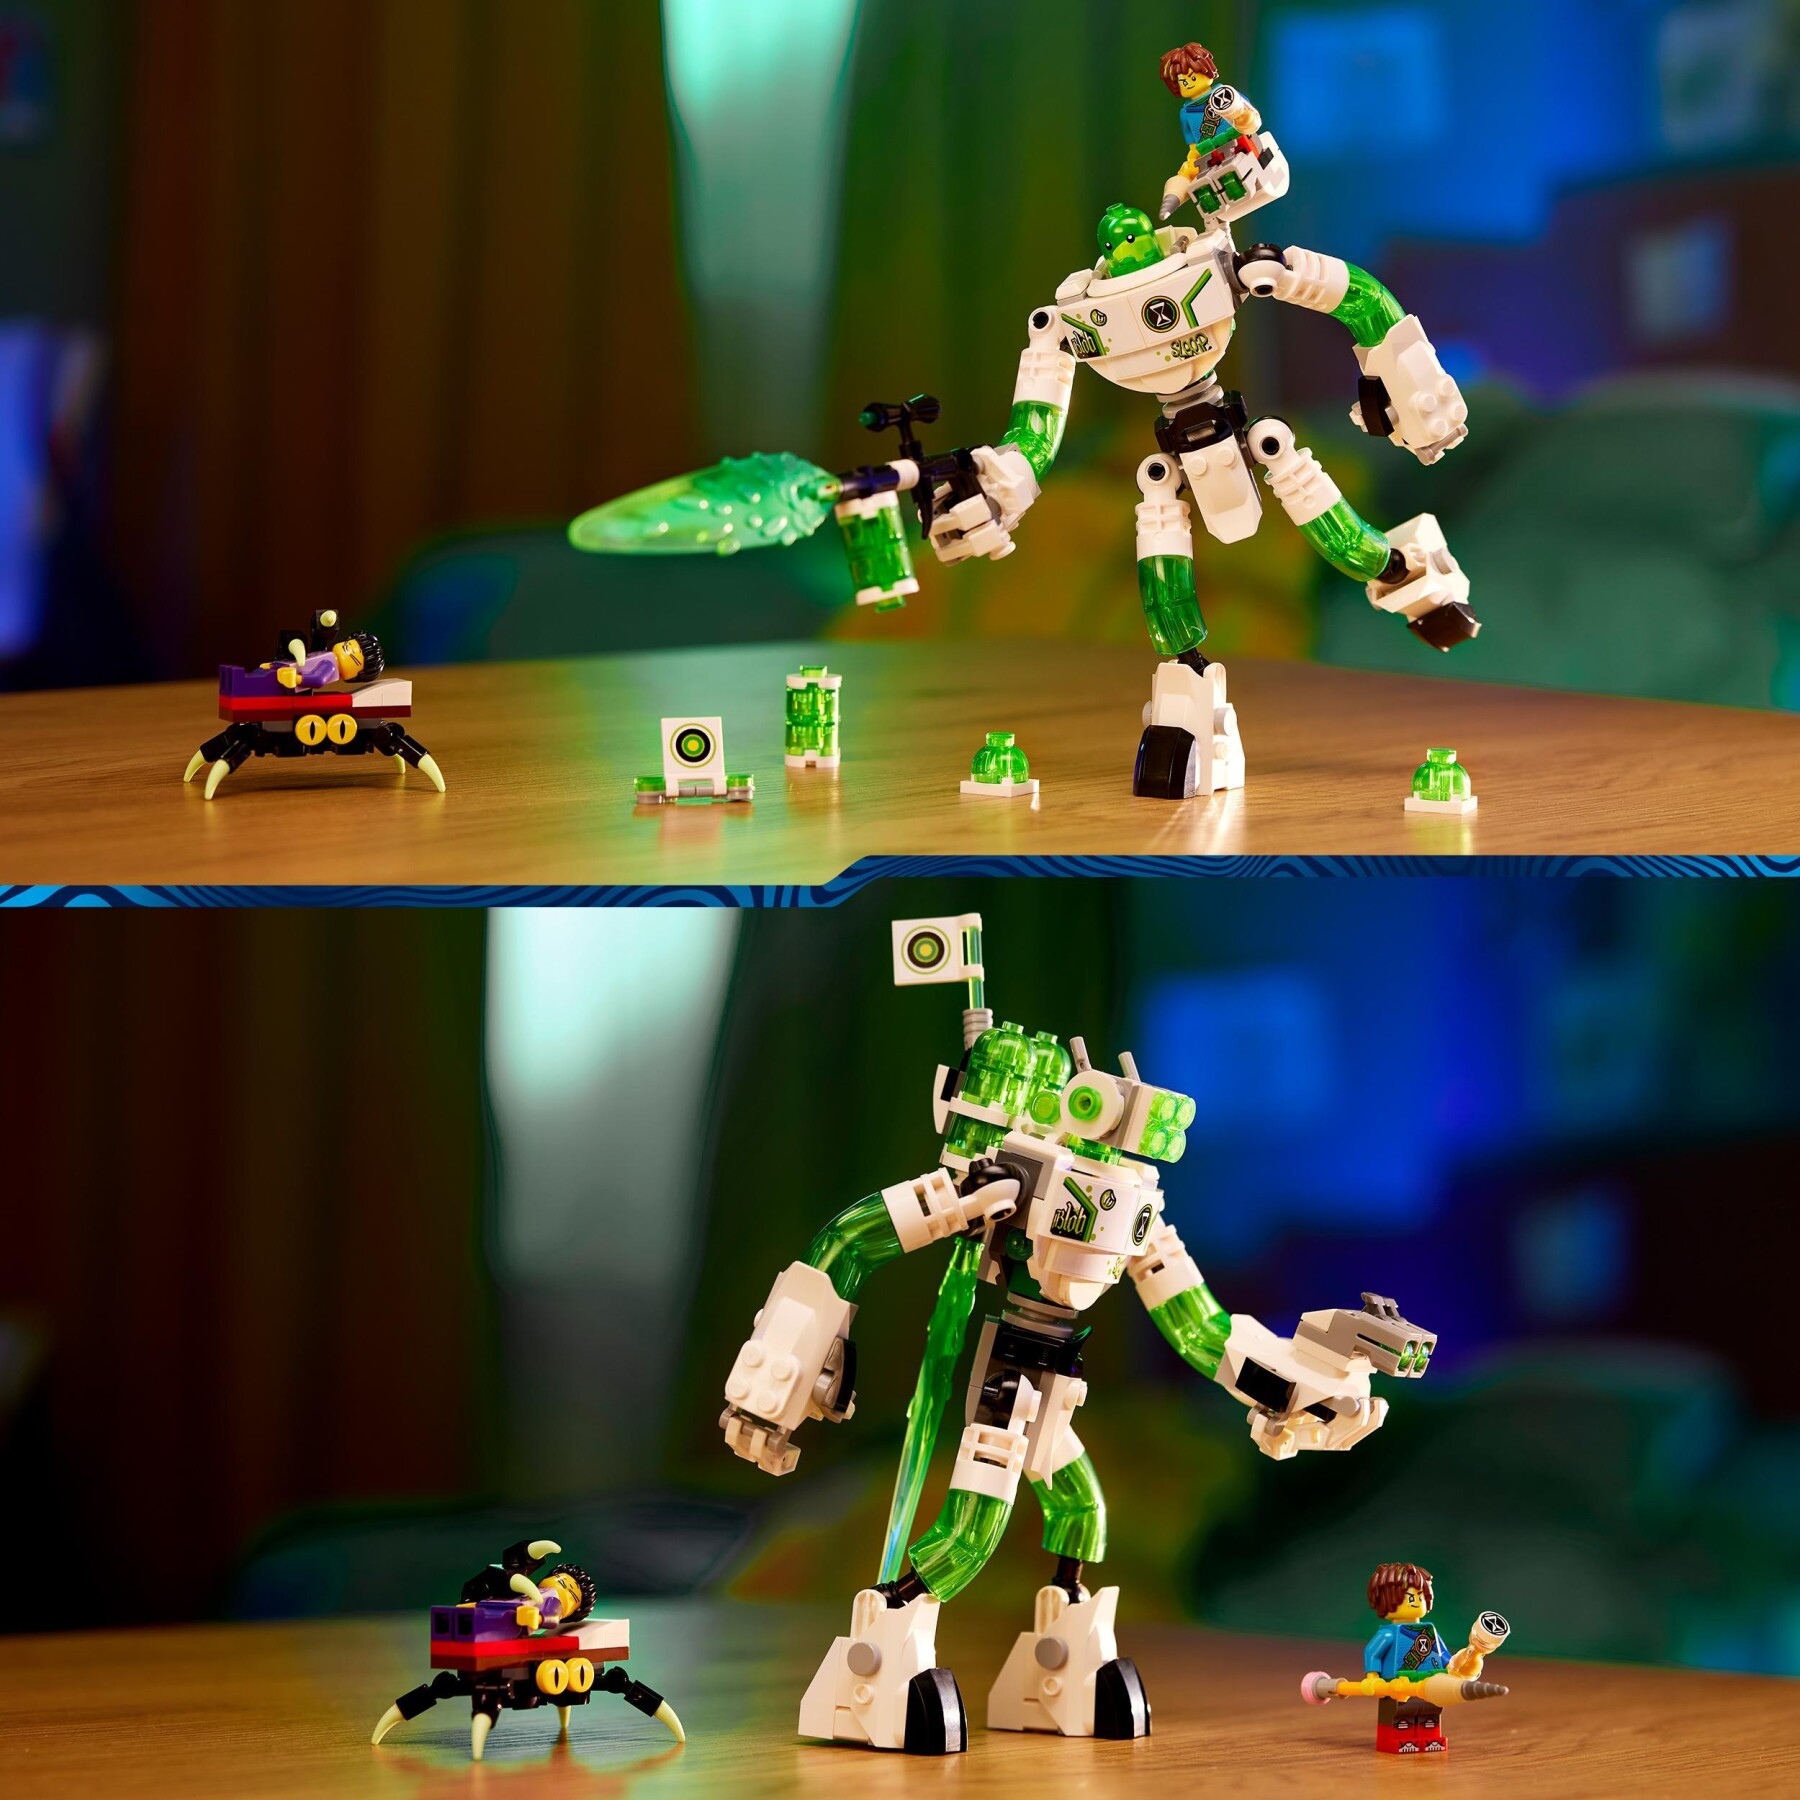 Lego dreamzzz 71454 mateo e il robot z-blob, grande robot giocattolo con minifigure di jayden e mateo, basato sulla serie tv - Lego, LEGO DREAMZZZ